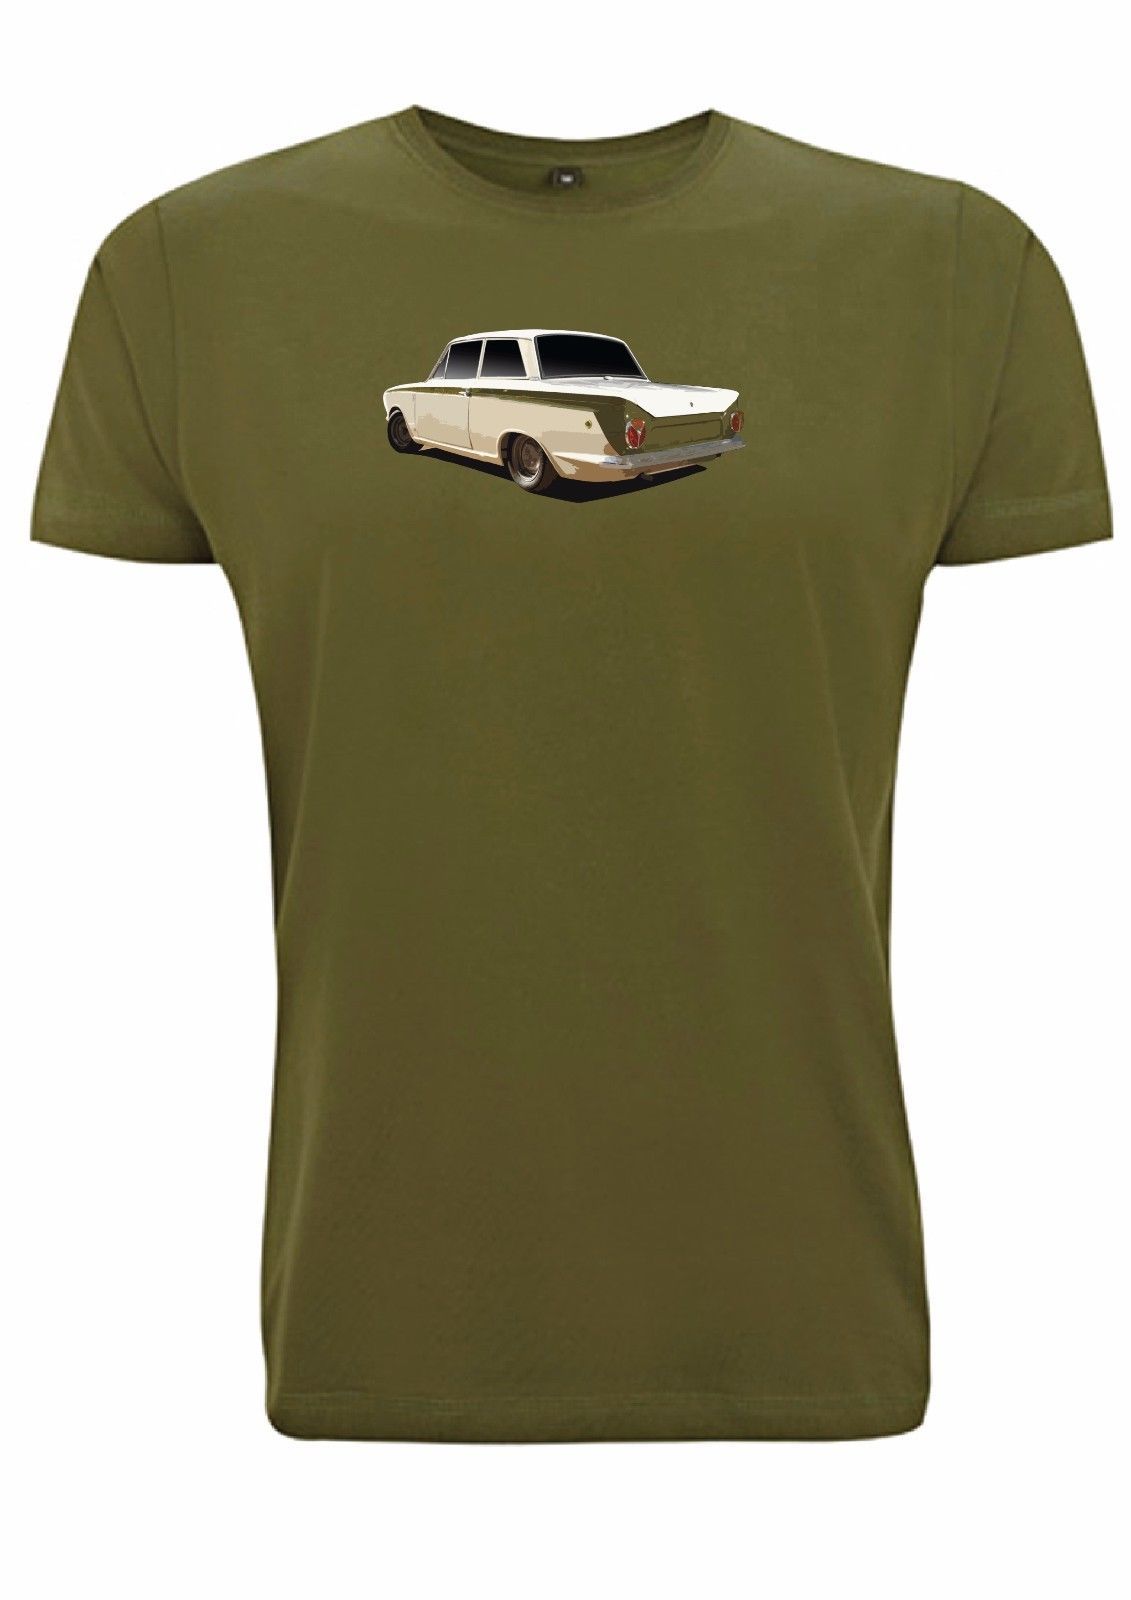 Lotus cortina t shirt mk1 classic car retro show green flash vintage tshirt rad